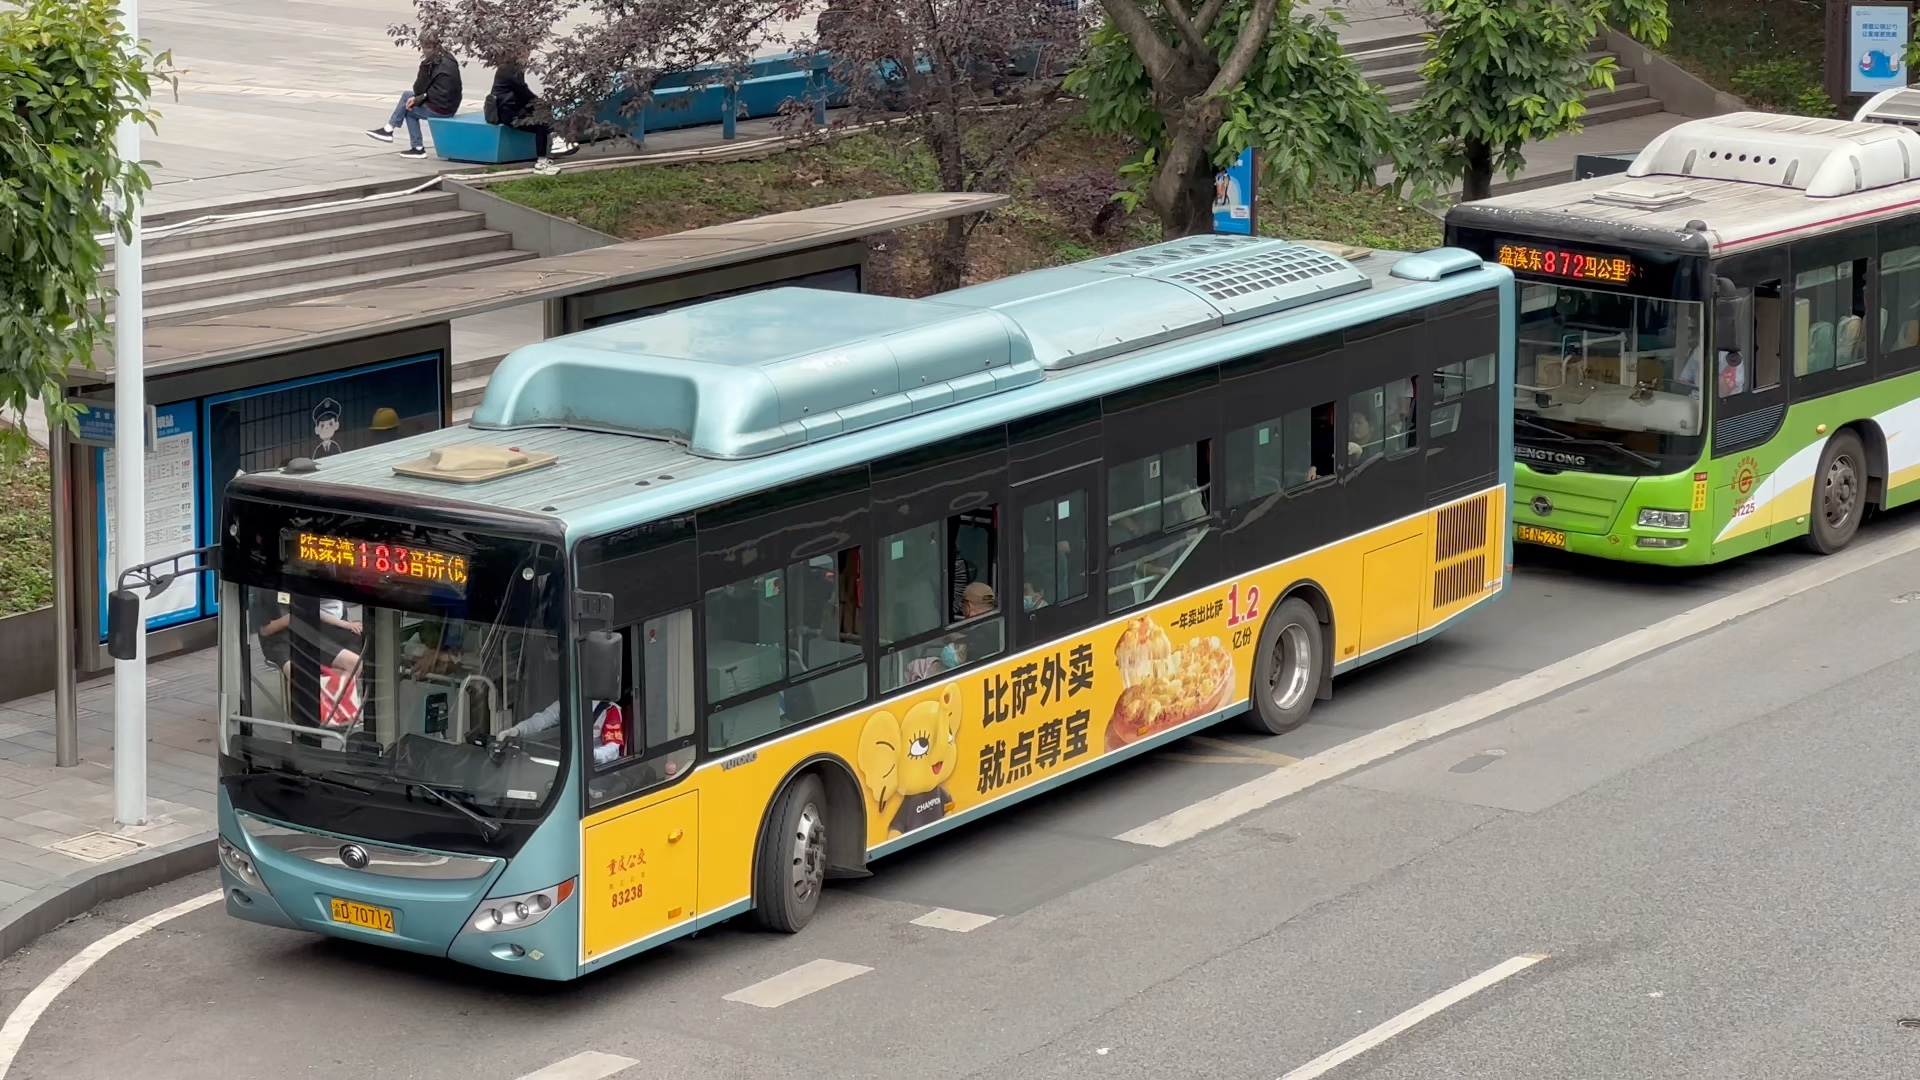 7 1/43 重庆公交183线 83229号车 宇通客车zk6125hng2模型